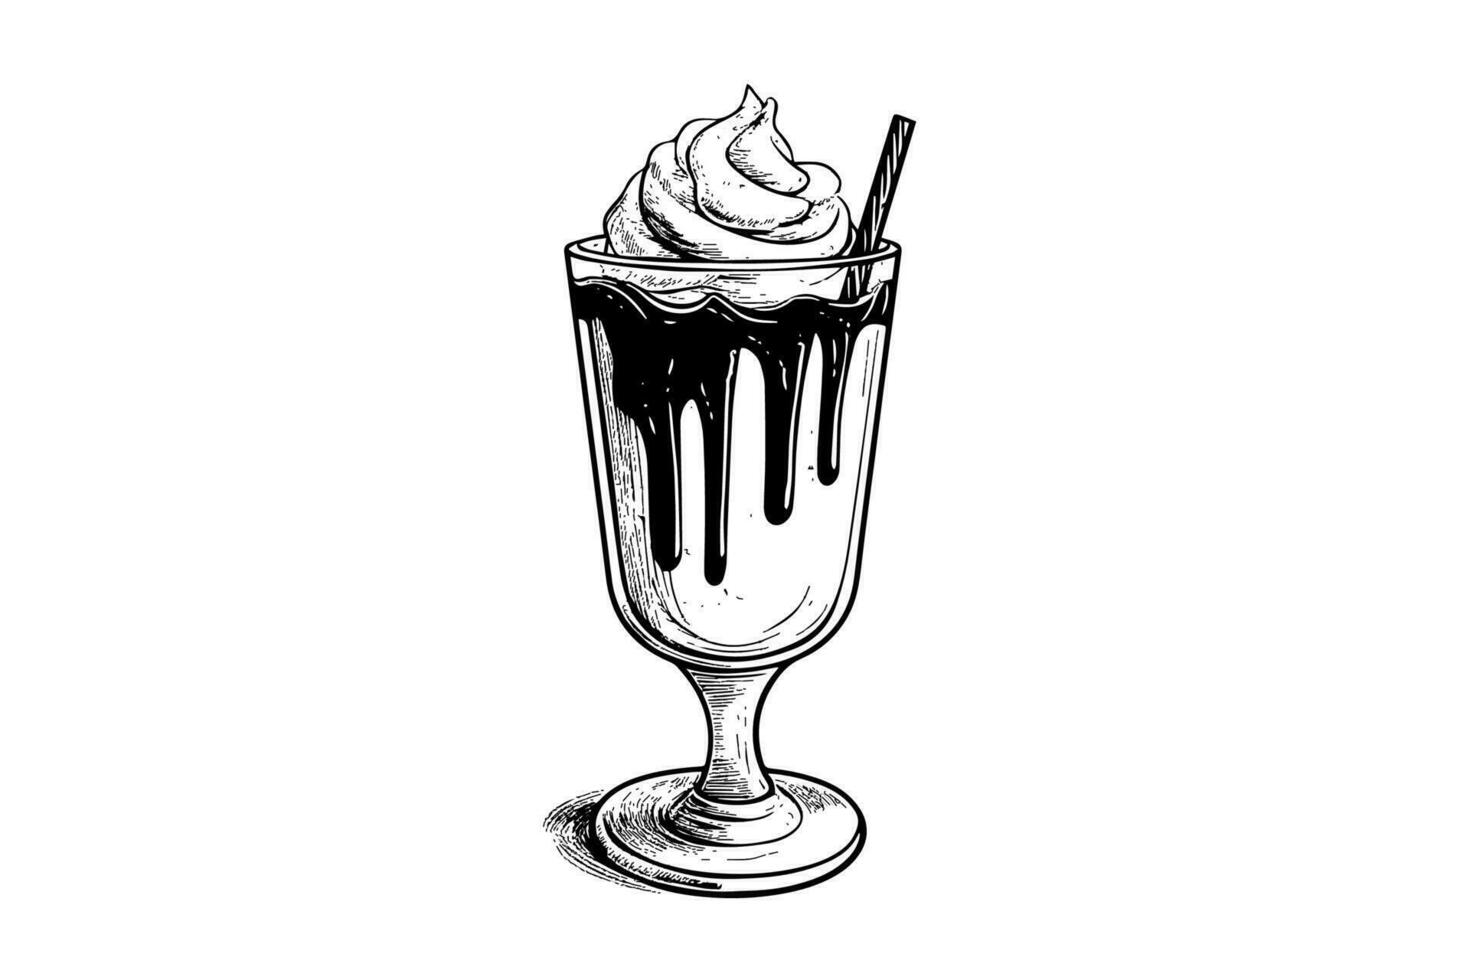 choklad mjölk skaka skiss gravyr vektor illustration. svart och vit isolerat sammansättning.